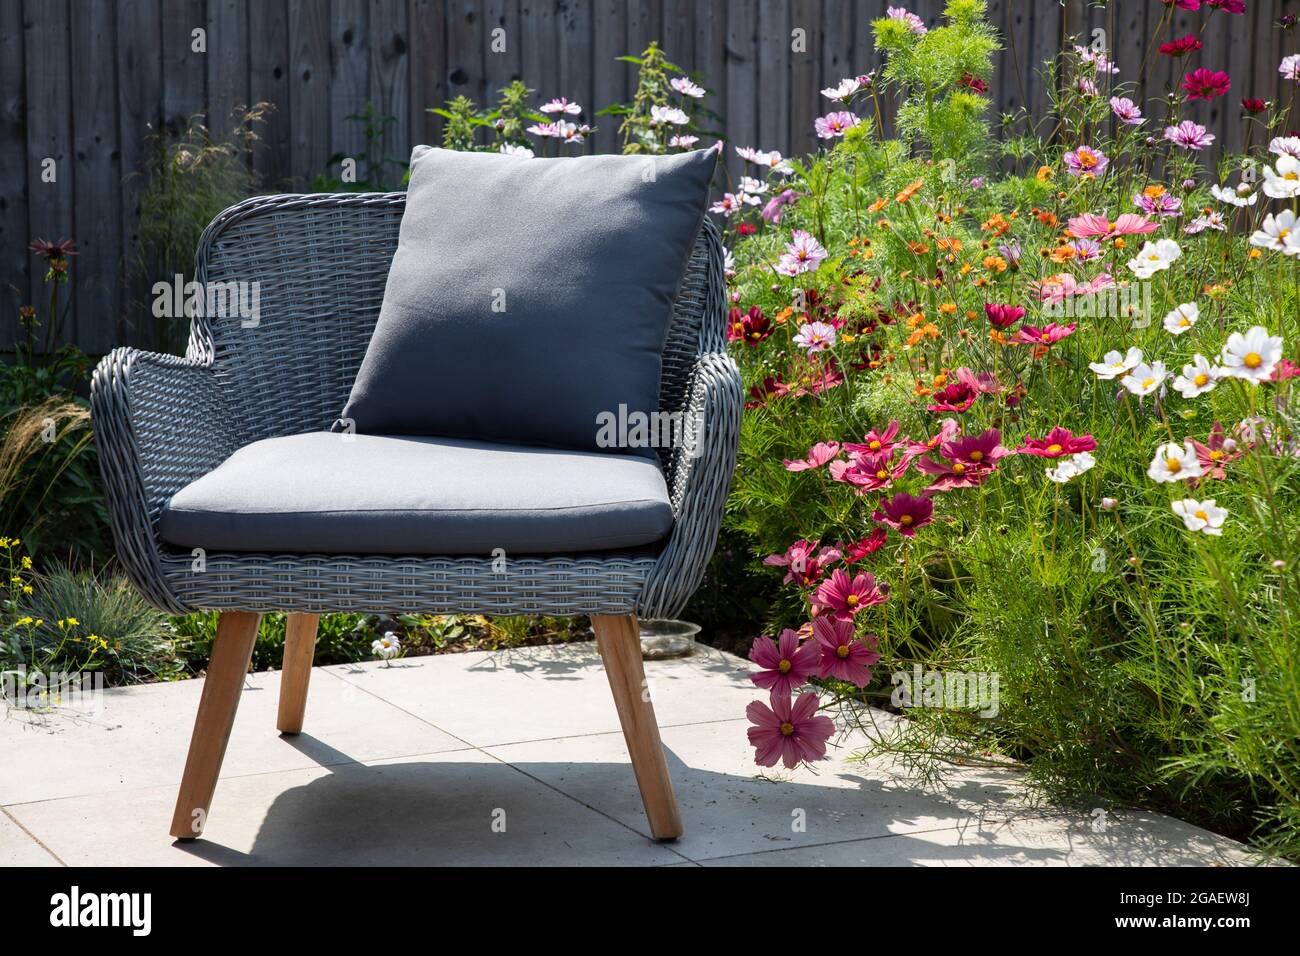 Garden fchair on the terrace on sunny day Stock Photo